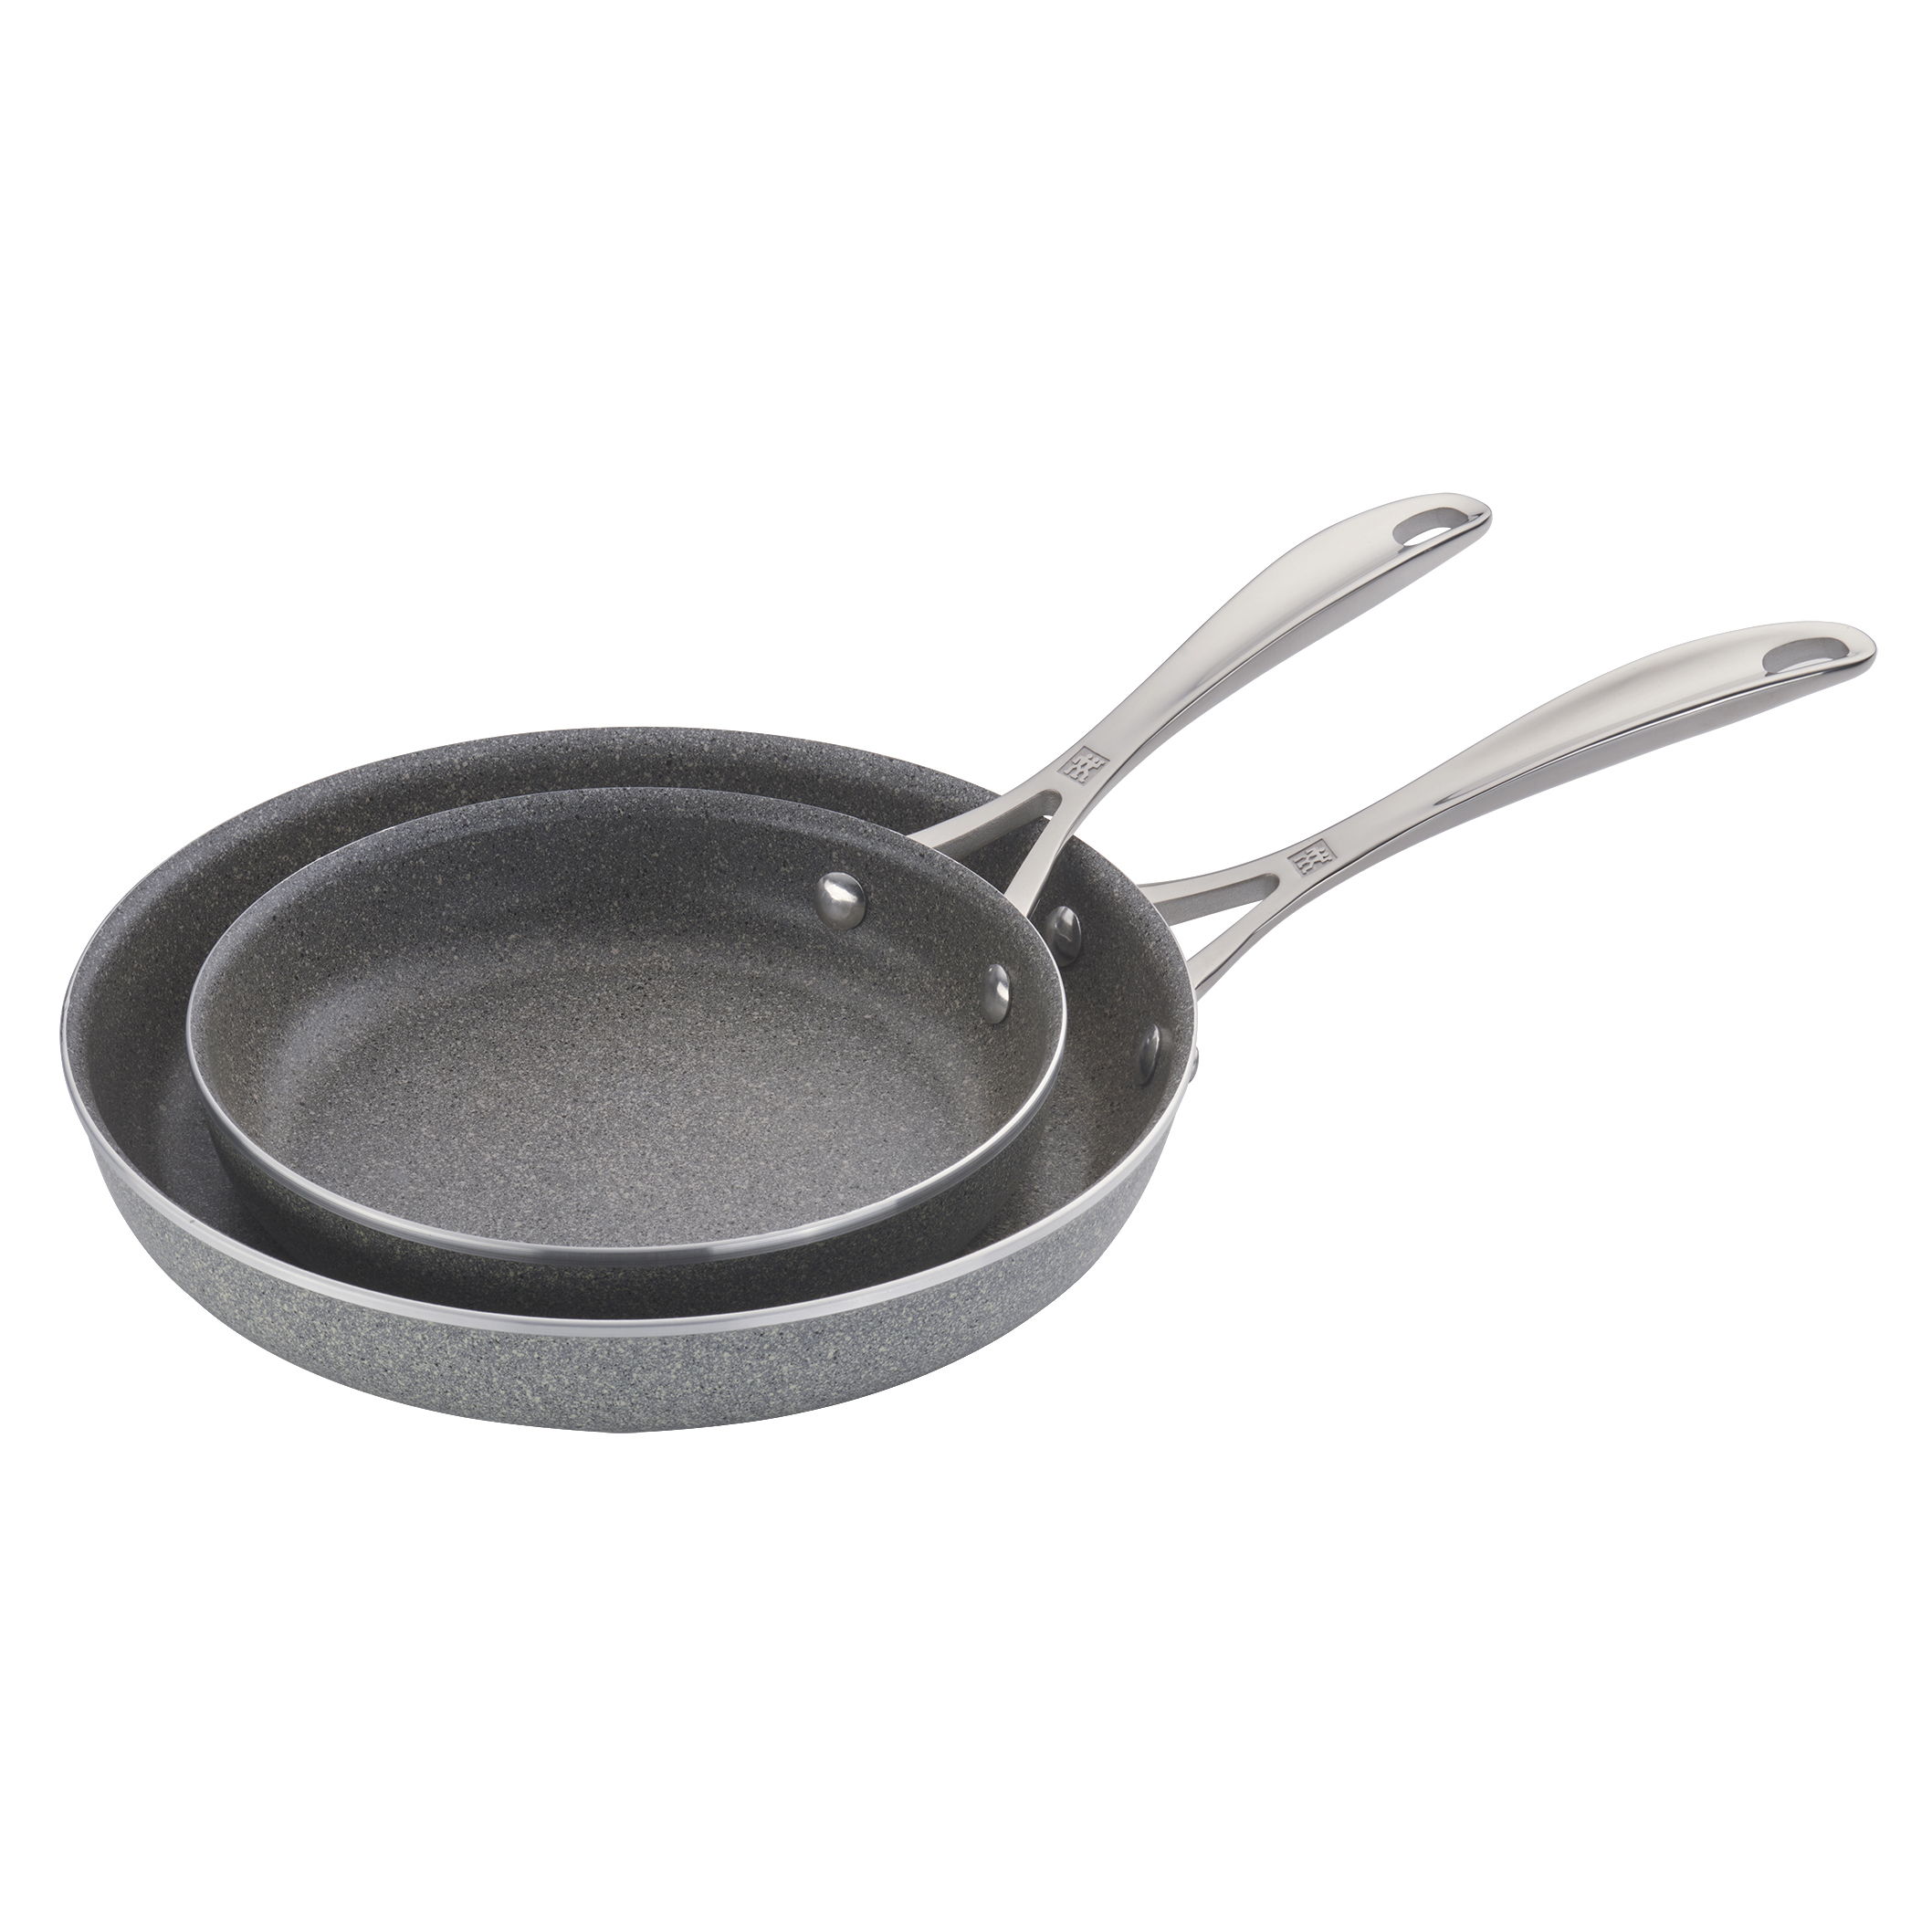 Toastmaster Aluminum Non Stick 2 -Piece Frying Pan Frying Pan